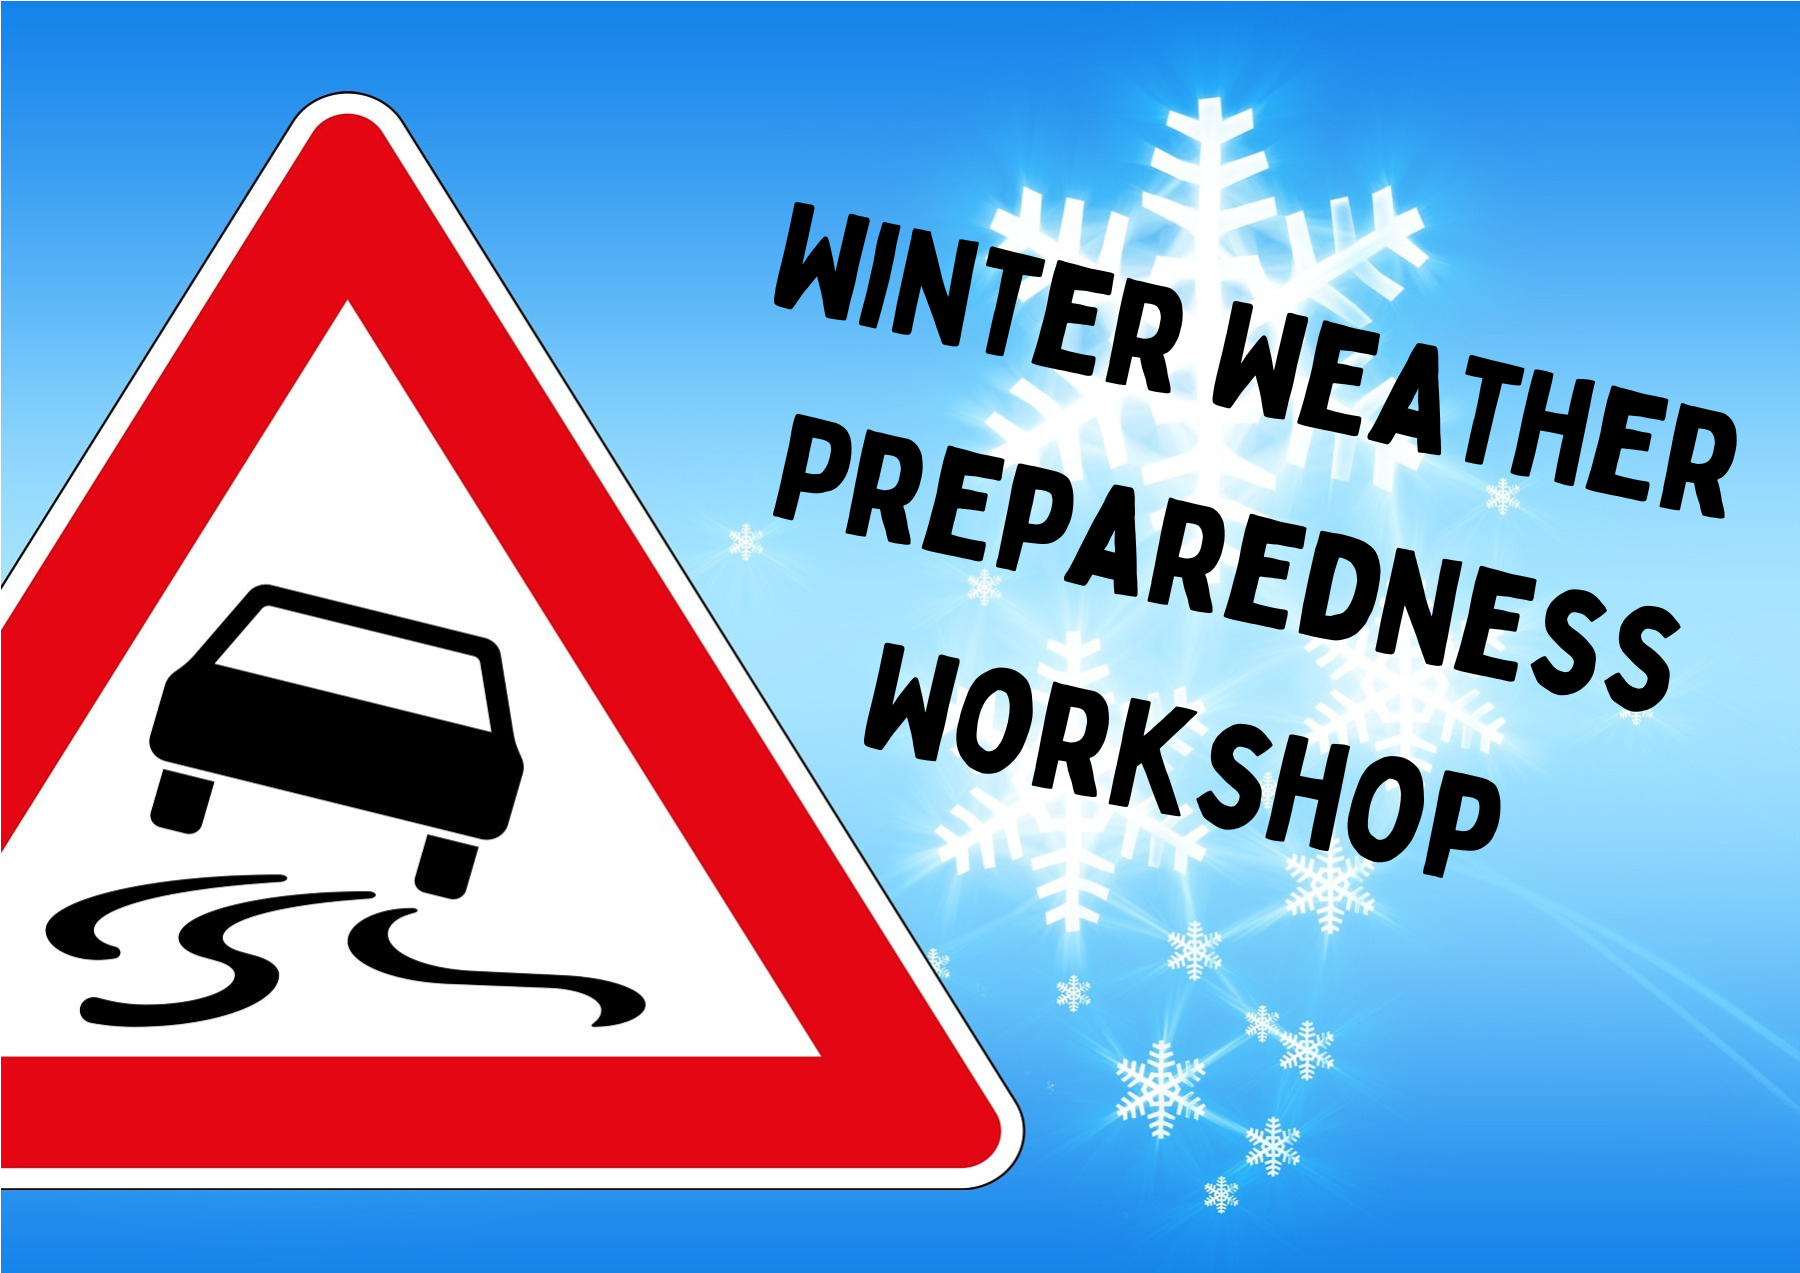 Winter Weather Workshop